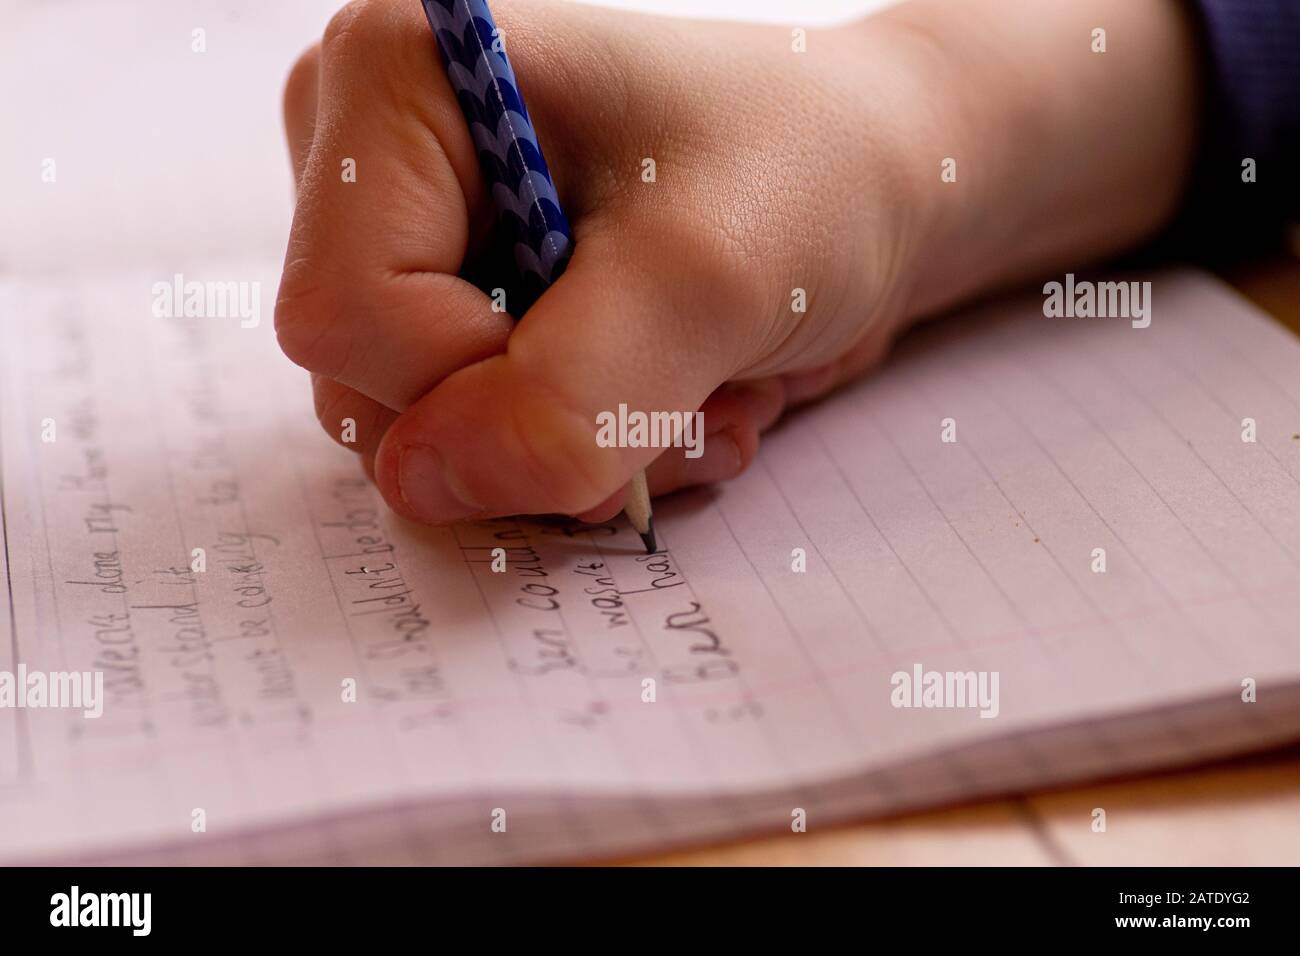 Niño haciendo la tarea, escribiendo líneas y oraciones con lápiz Foto de stock